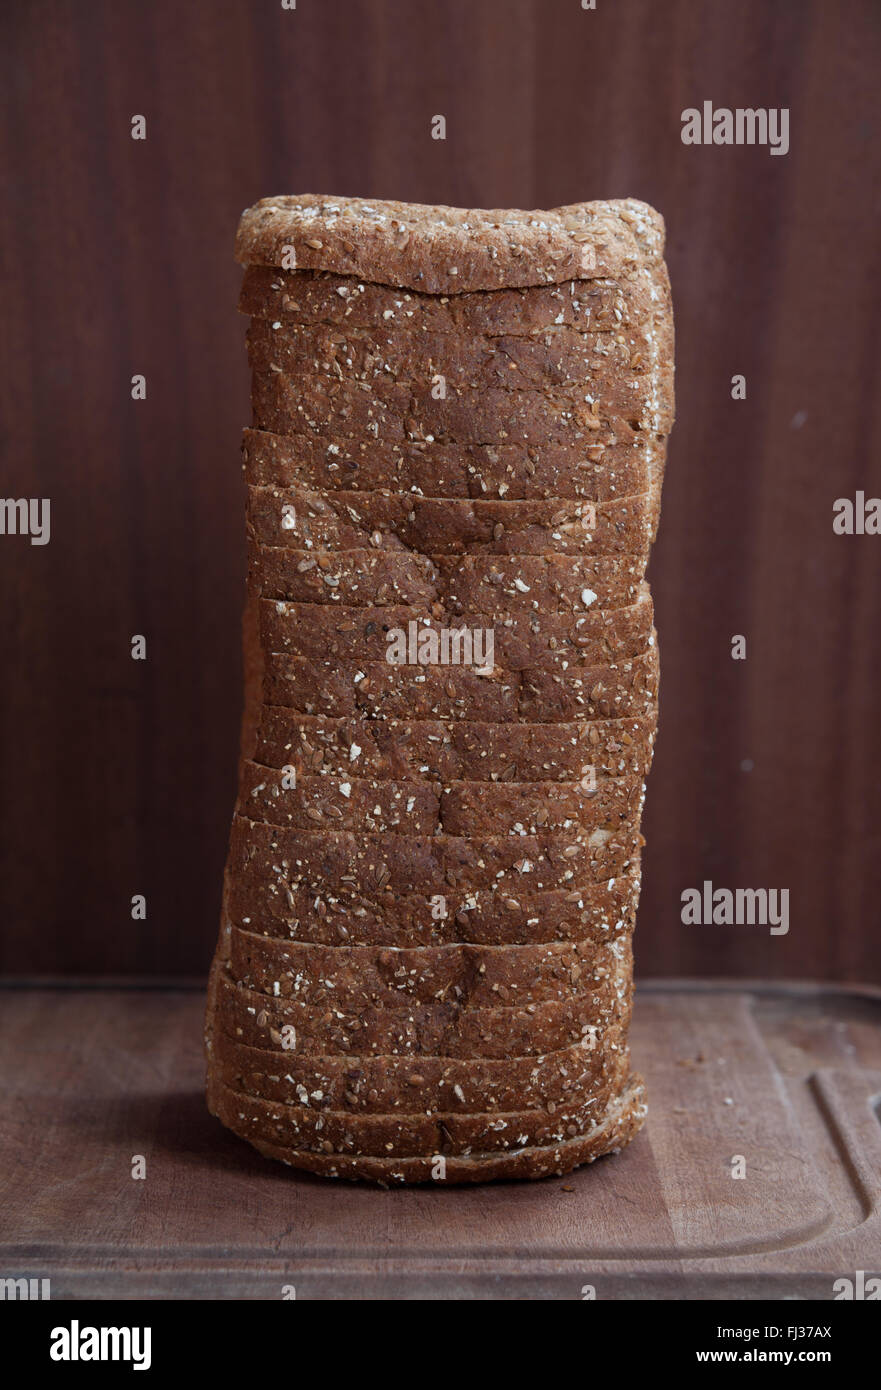 Une pile de pain complet sur une surface en bois Banque D'Images